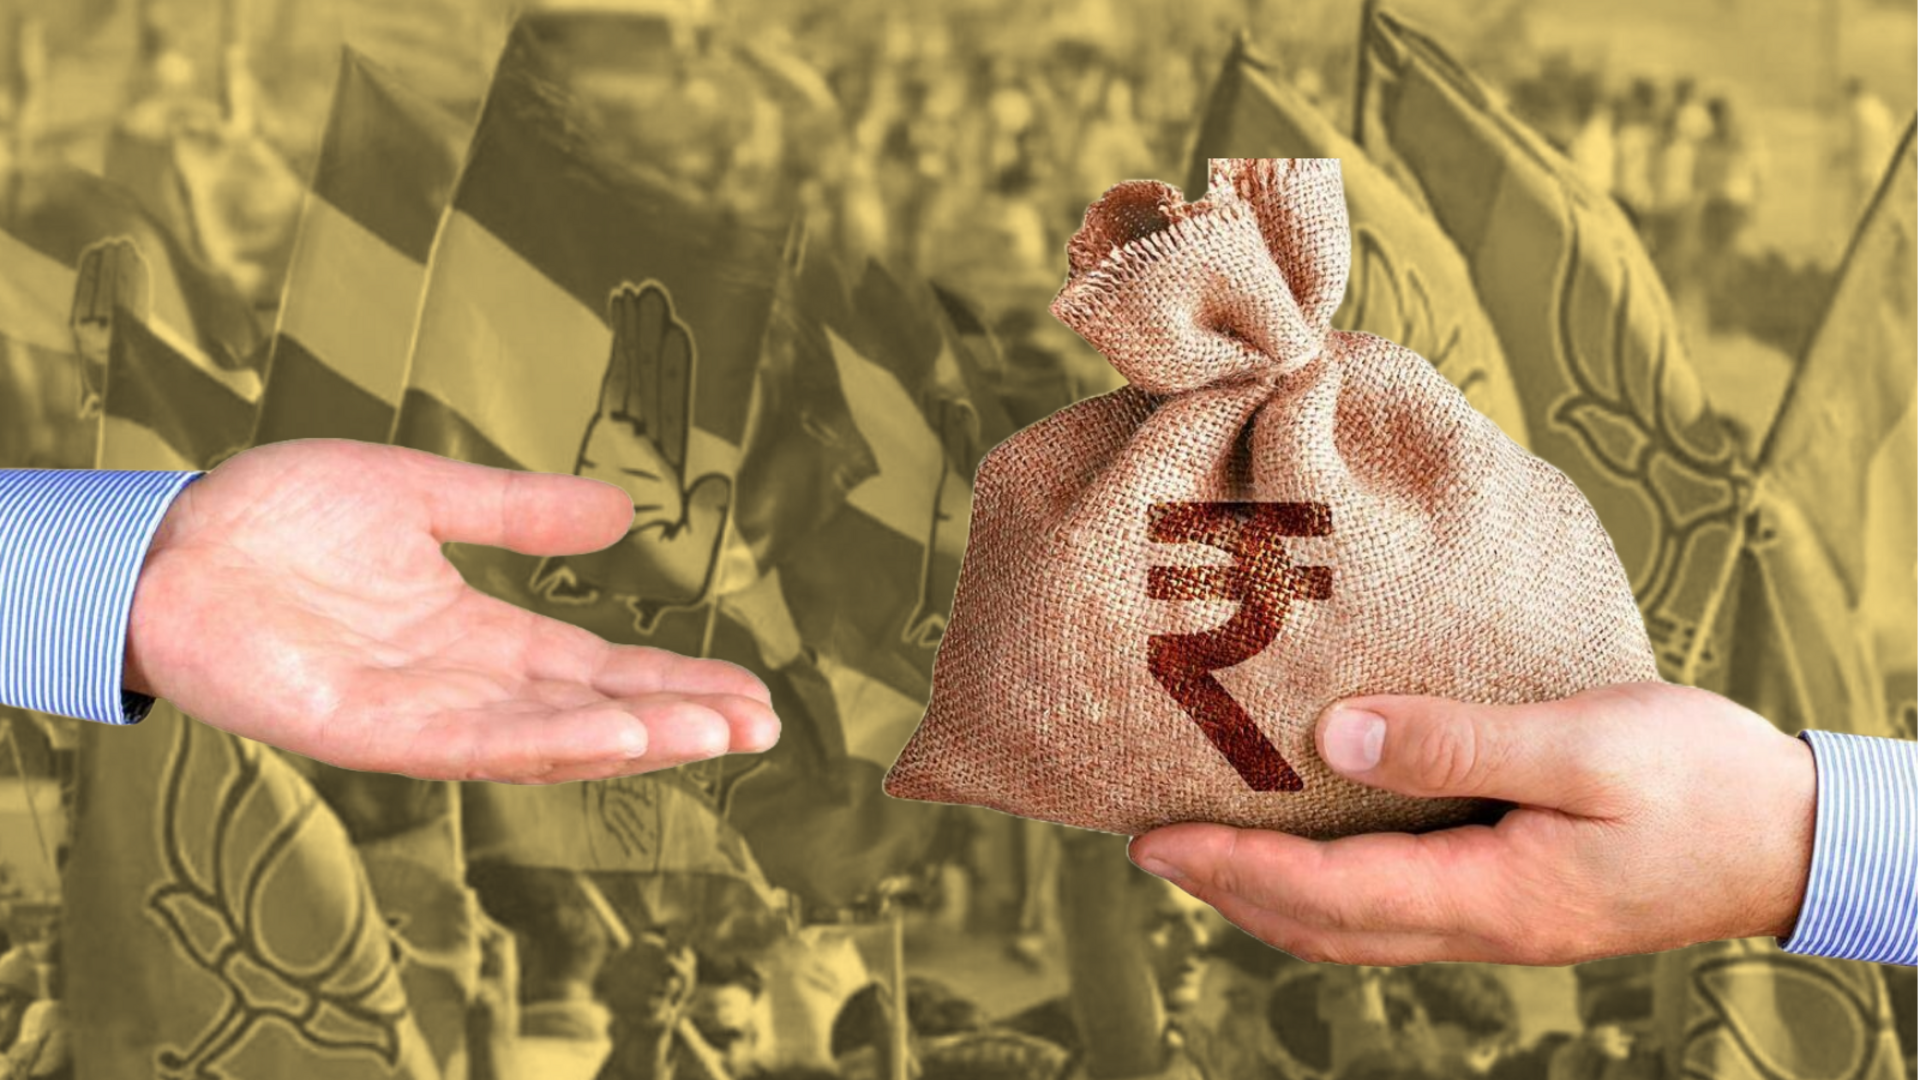 भाजपा को 2022-23 में मिले 1,200 करोड़ रुपये के चुनावी बॉन्ड, कांग्रेस से 7 गुना ज्यादा